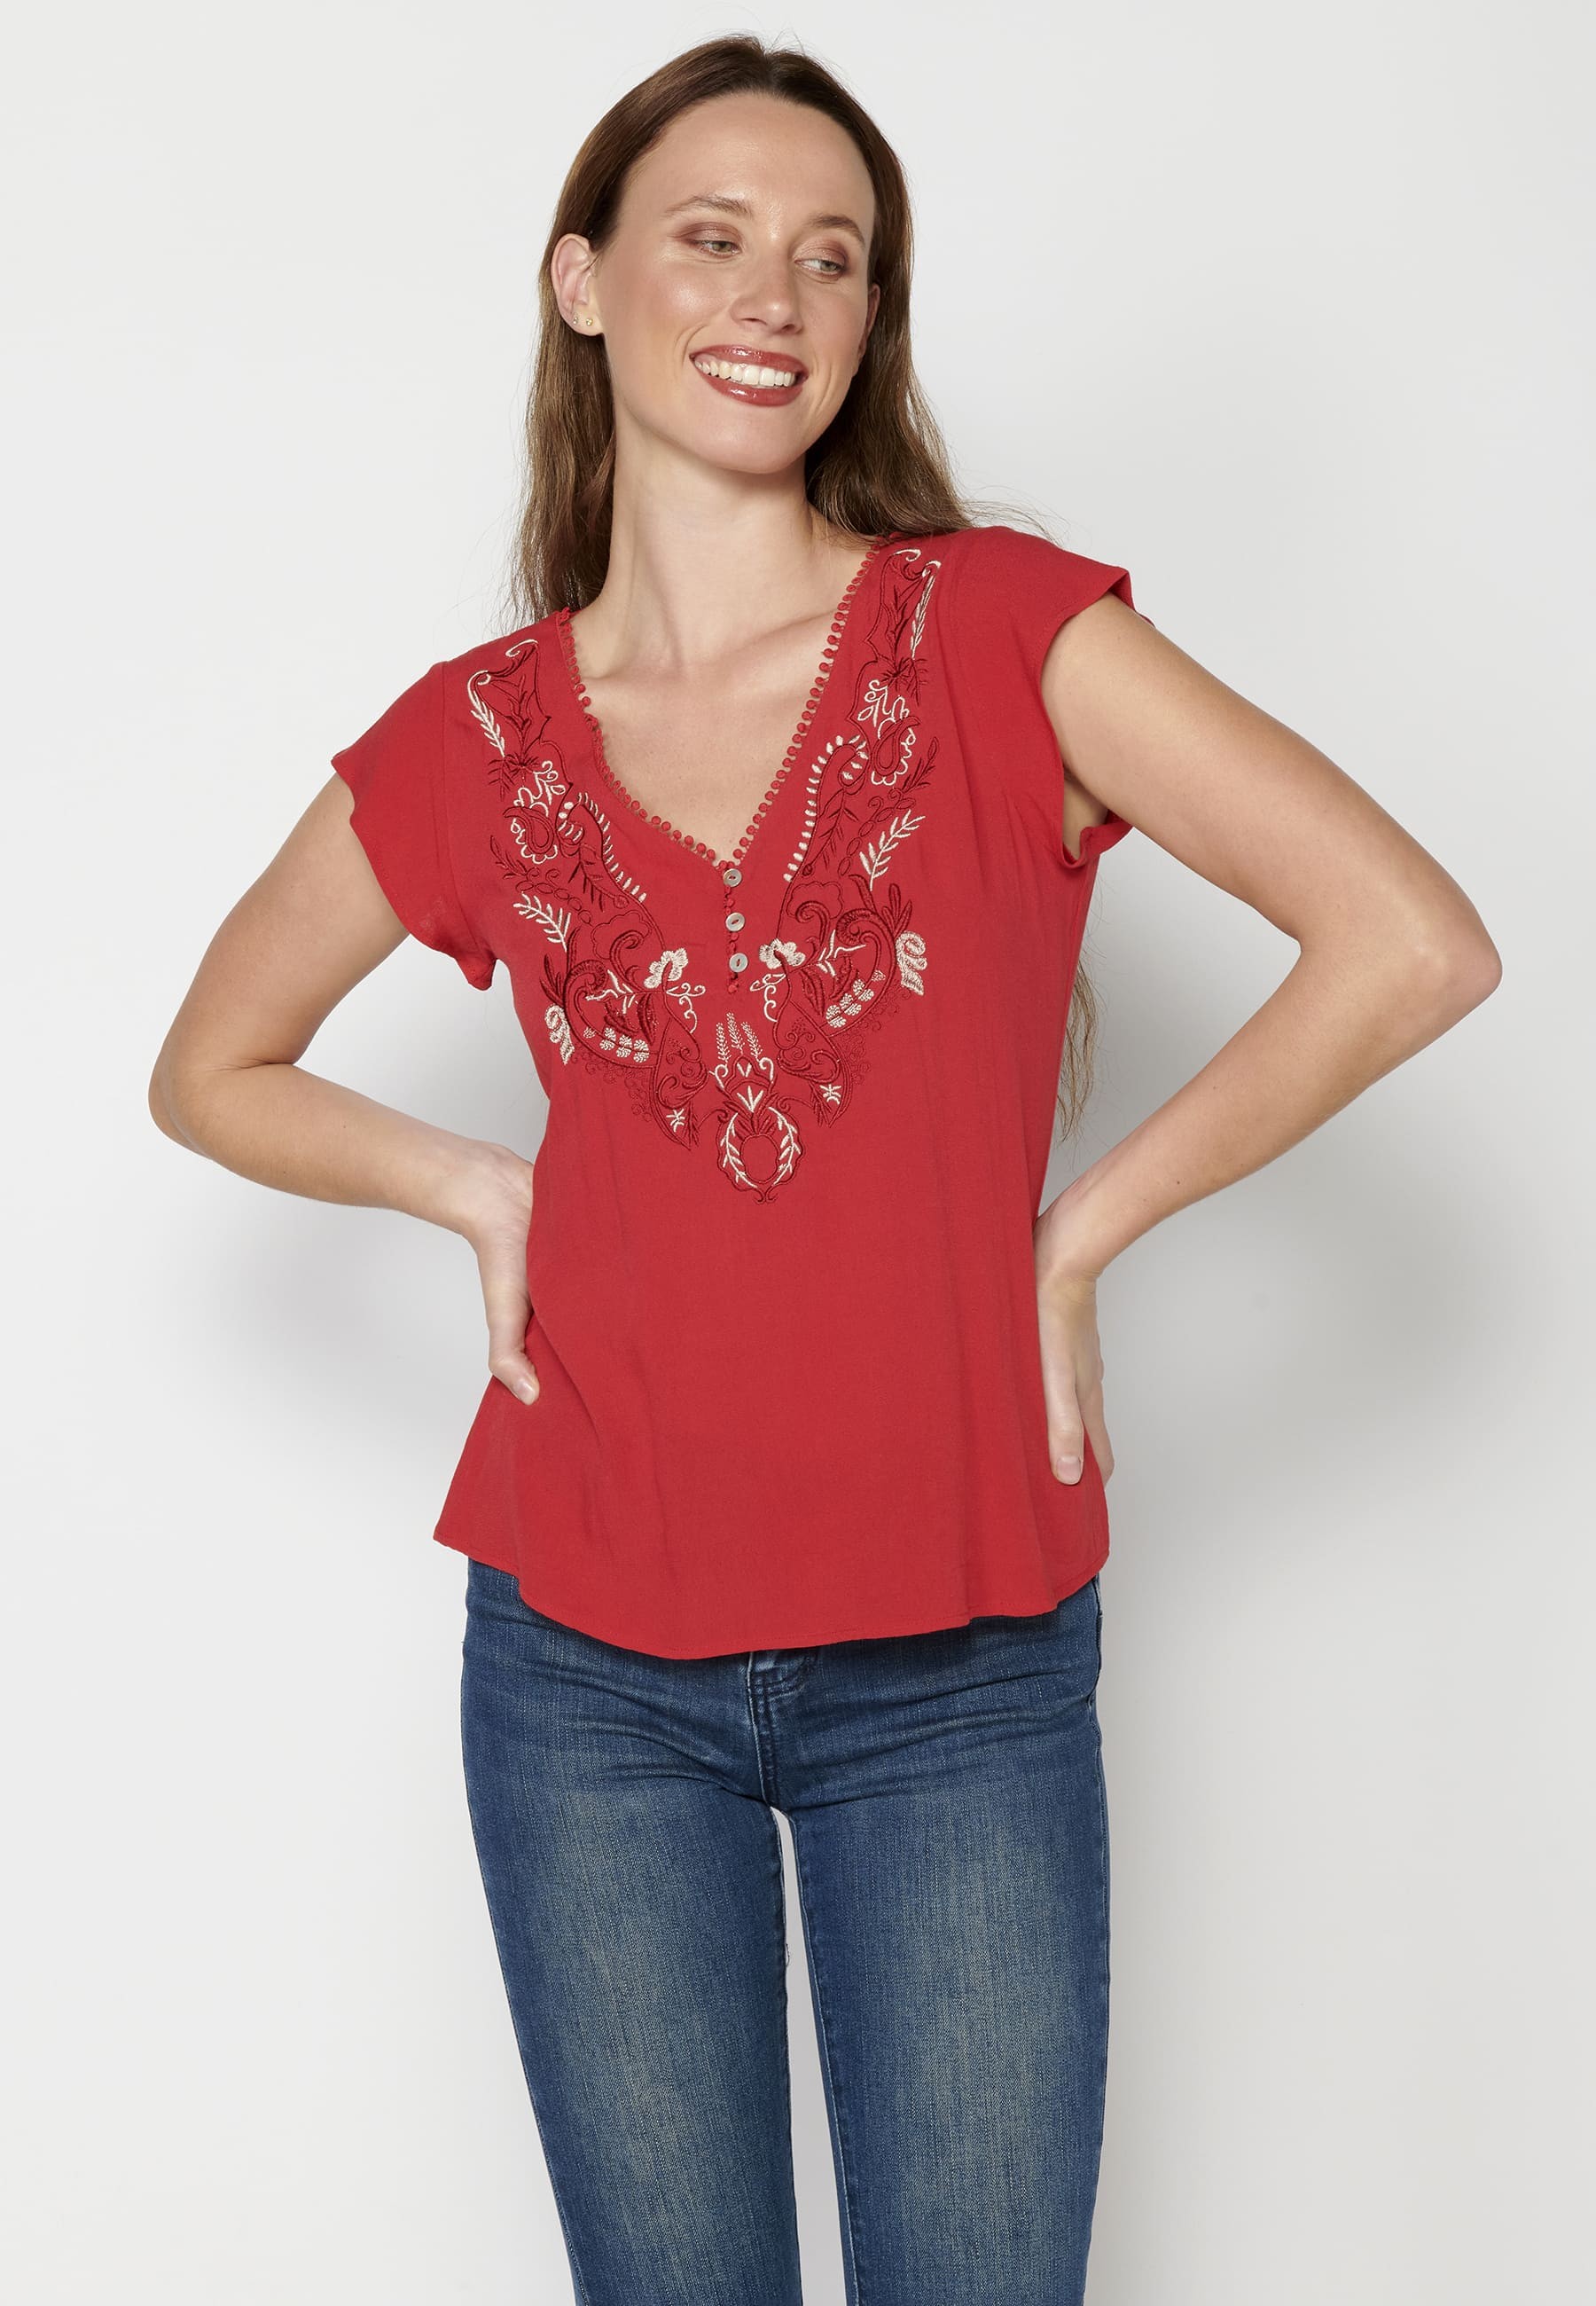 Brusa màniga curta amb detalls florals de Color Vermell per a Dona